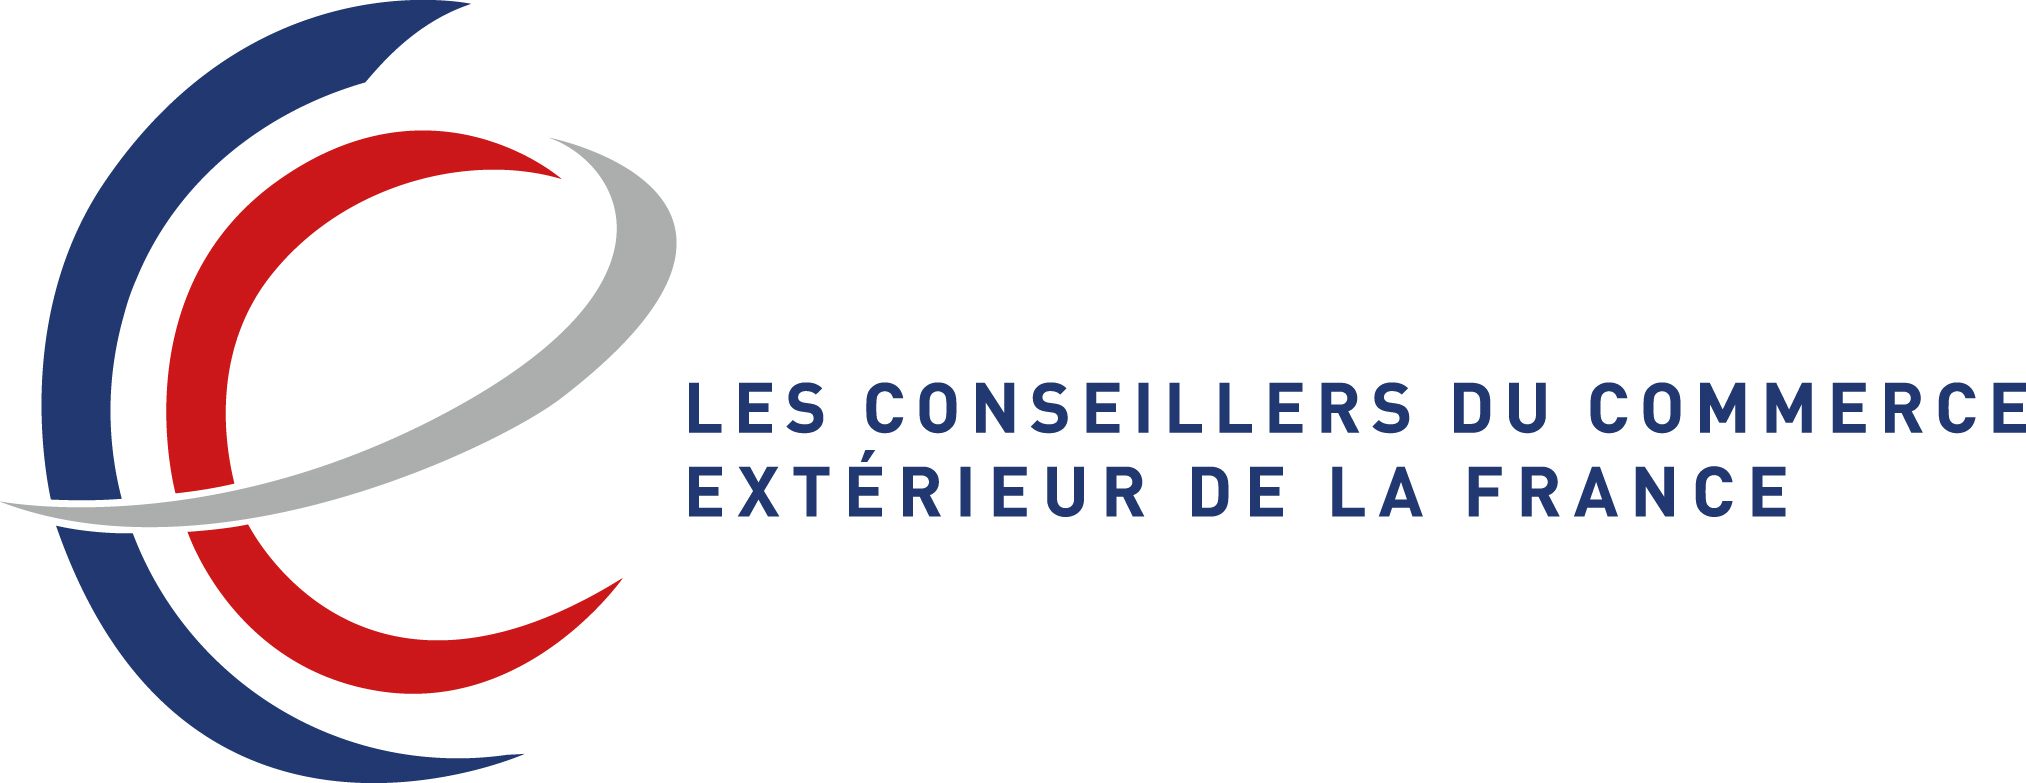 logo-les-cce-2